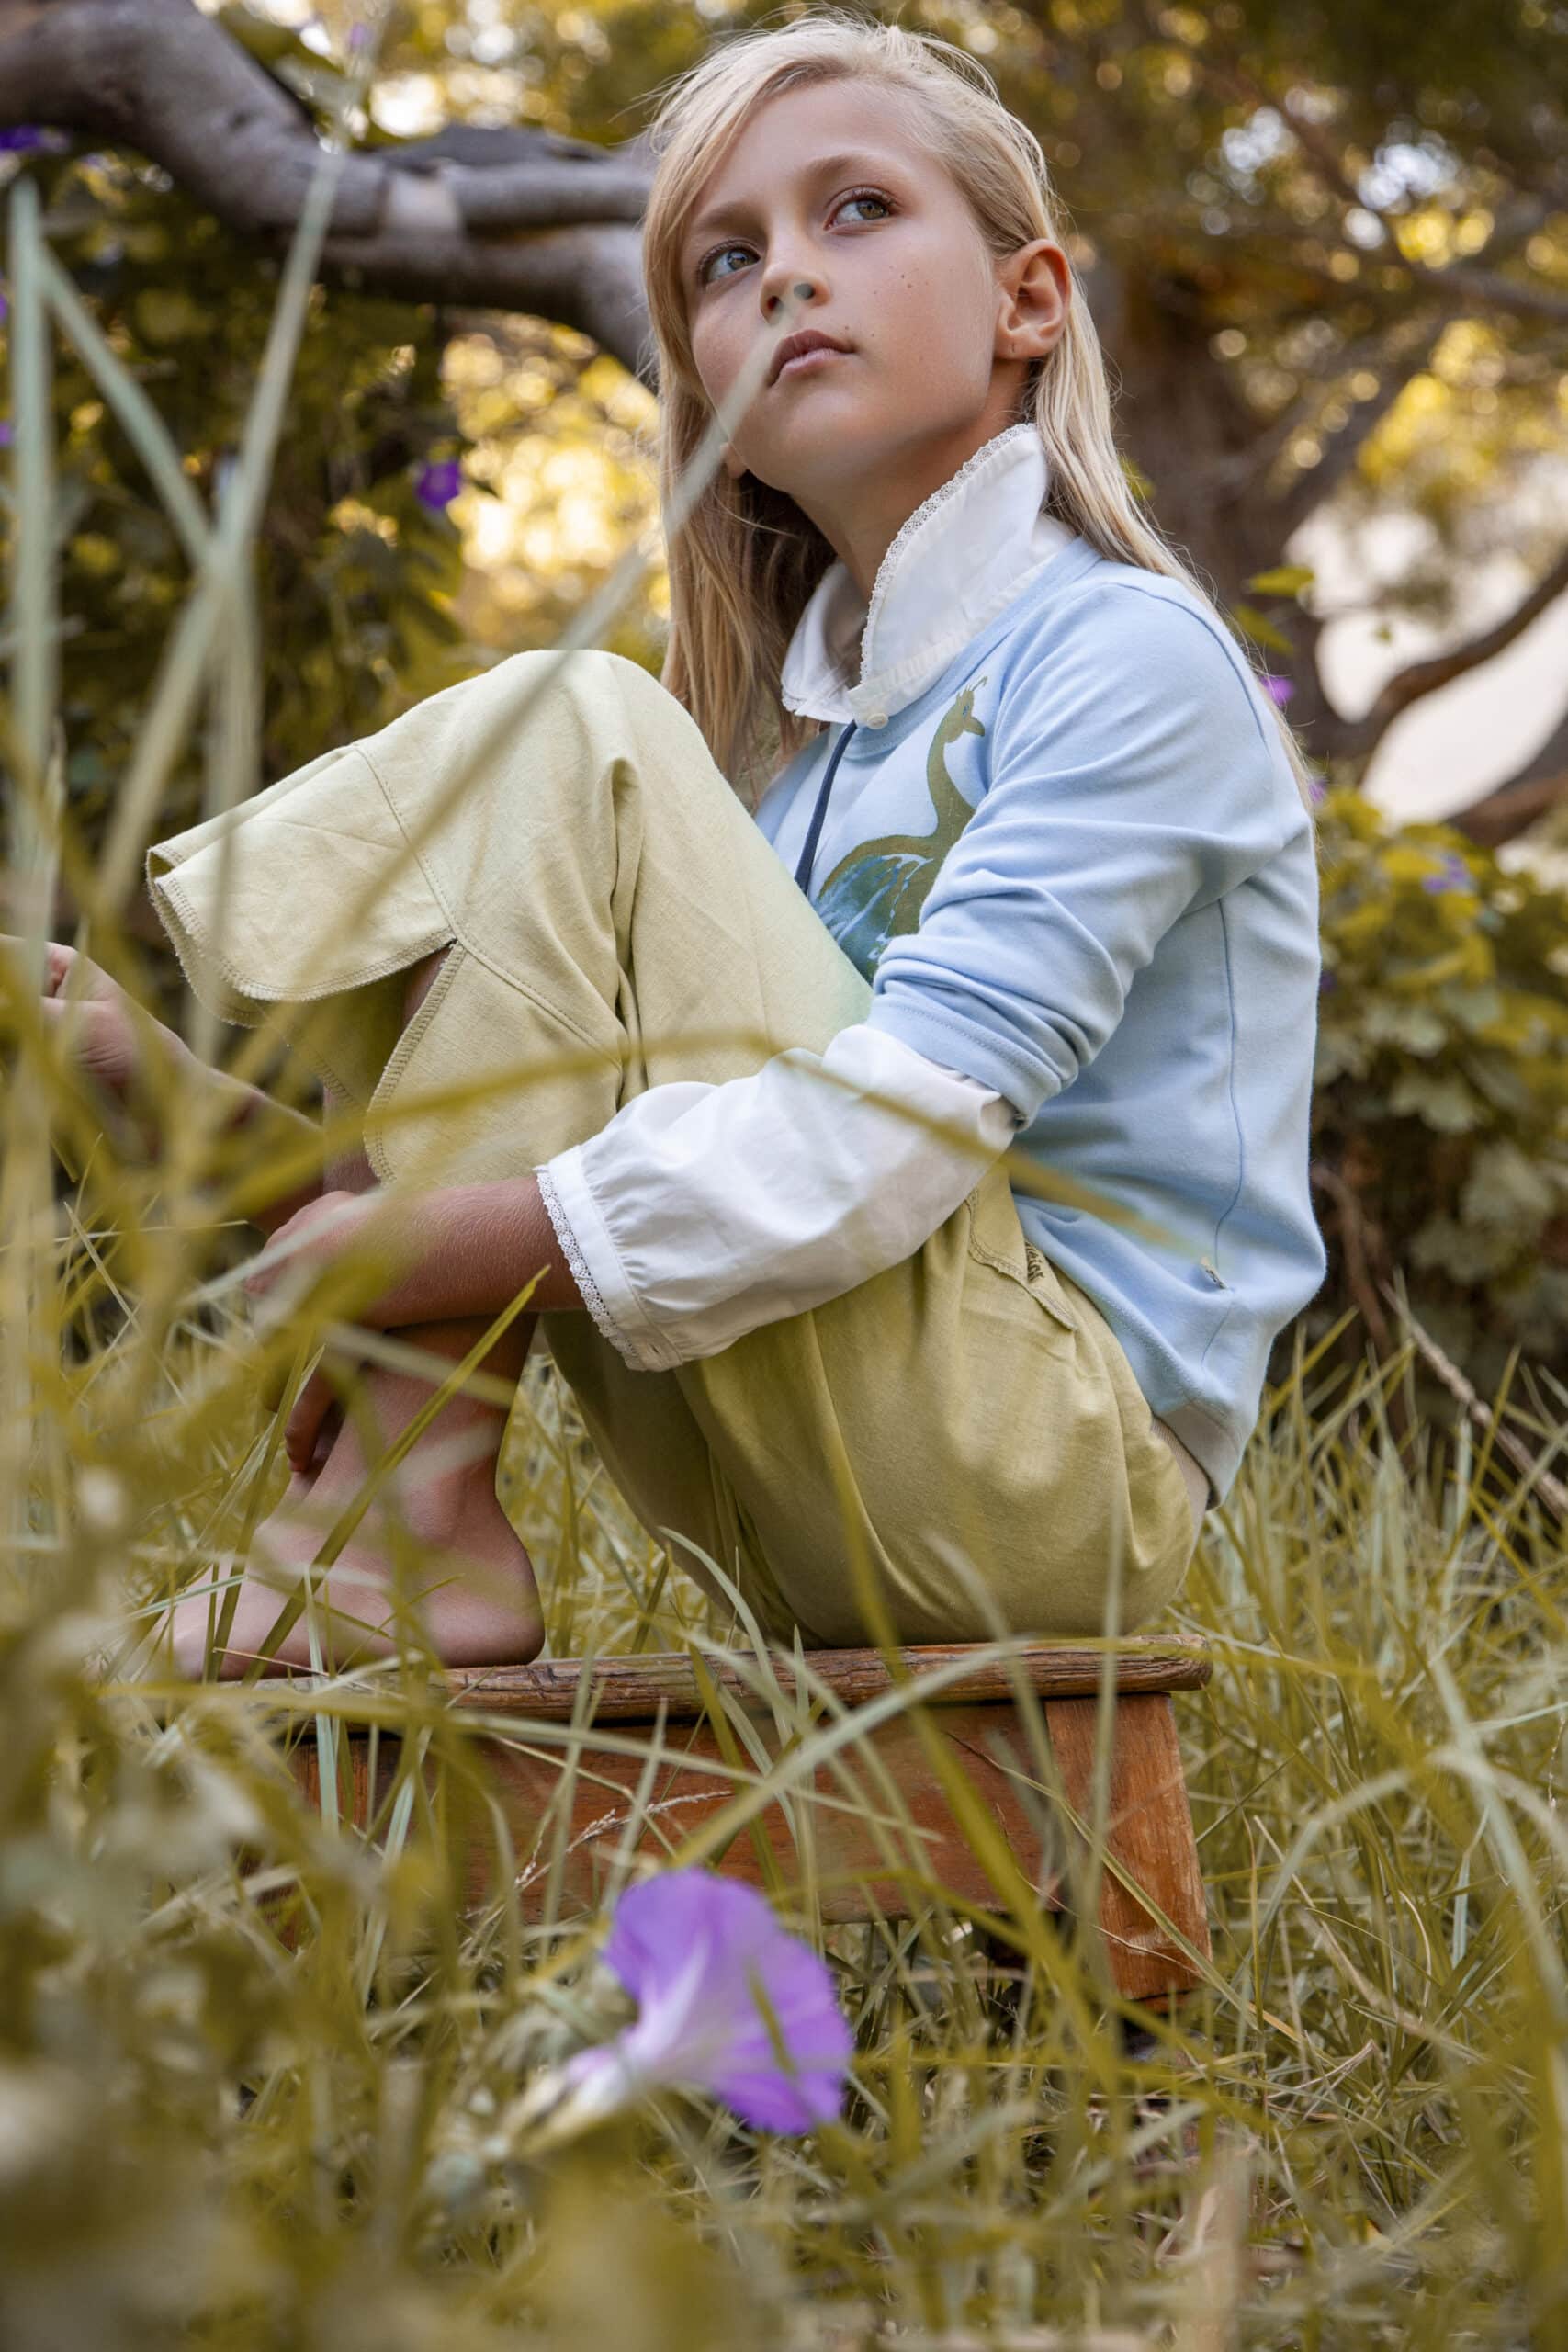 Ein junges Mädchen mit blondem Haar und einem blau-gelben Outfit sitzt nachdenklich unter einem Baum in einem Garten, mit sanftem Fokus auf das umgebende Grün und eine violette Blume. © Fotografie Tomas Rodriguez